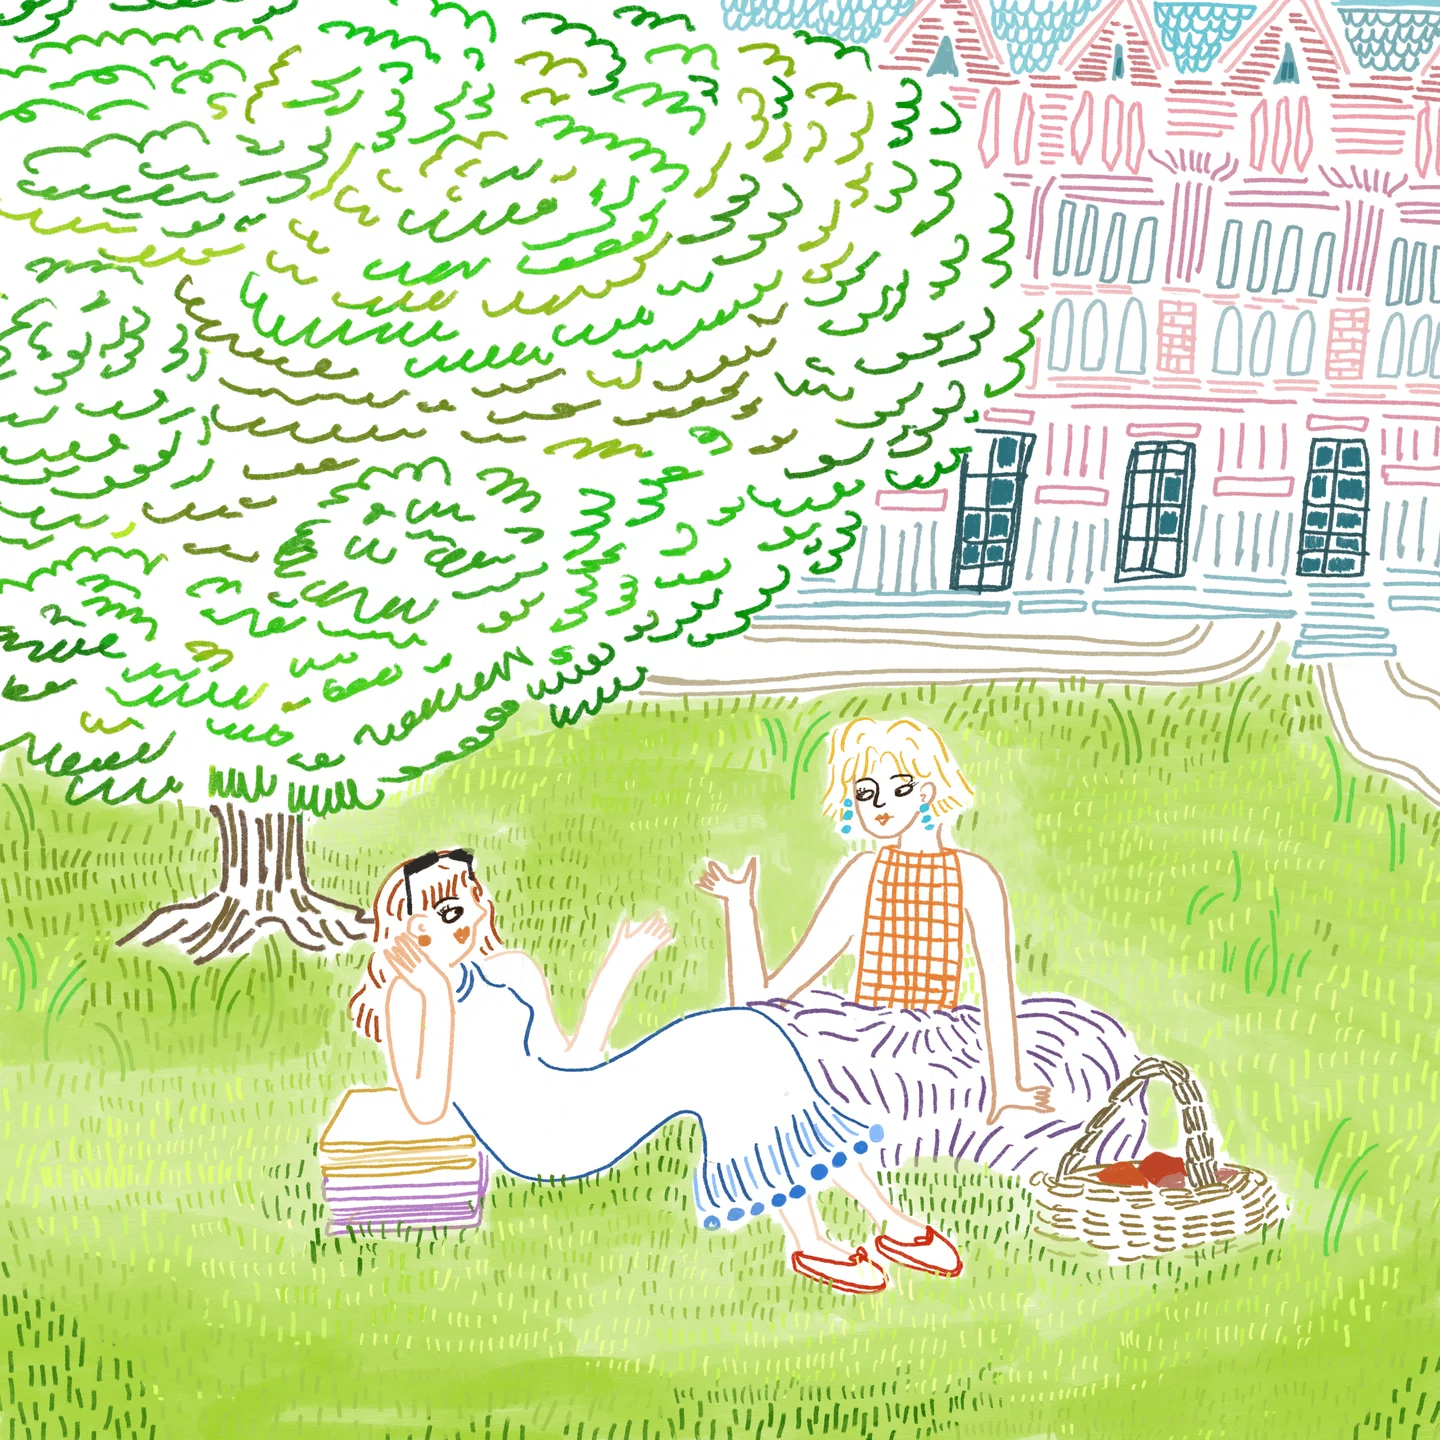 Os diários ilustrativos observacionais de Irene Chung a ajudam a encontrar conforto ao passar um tempo sozinha